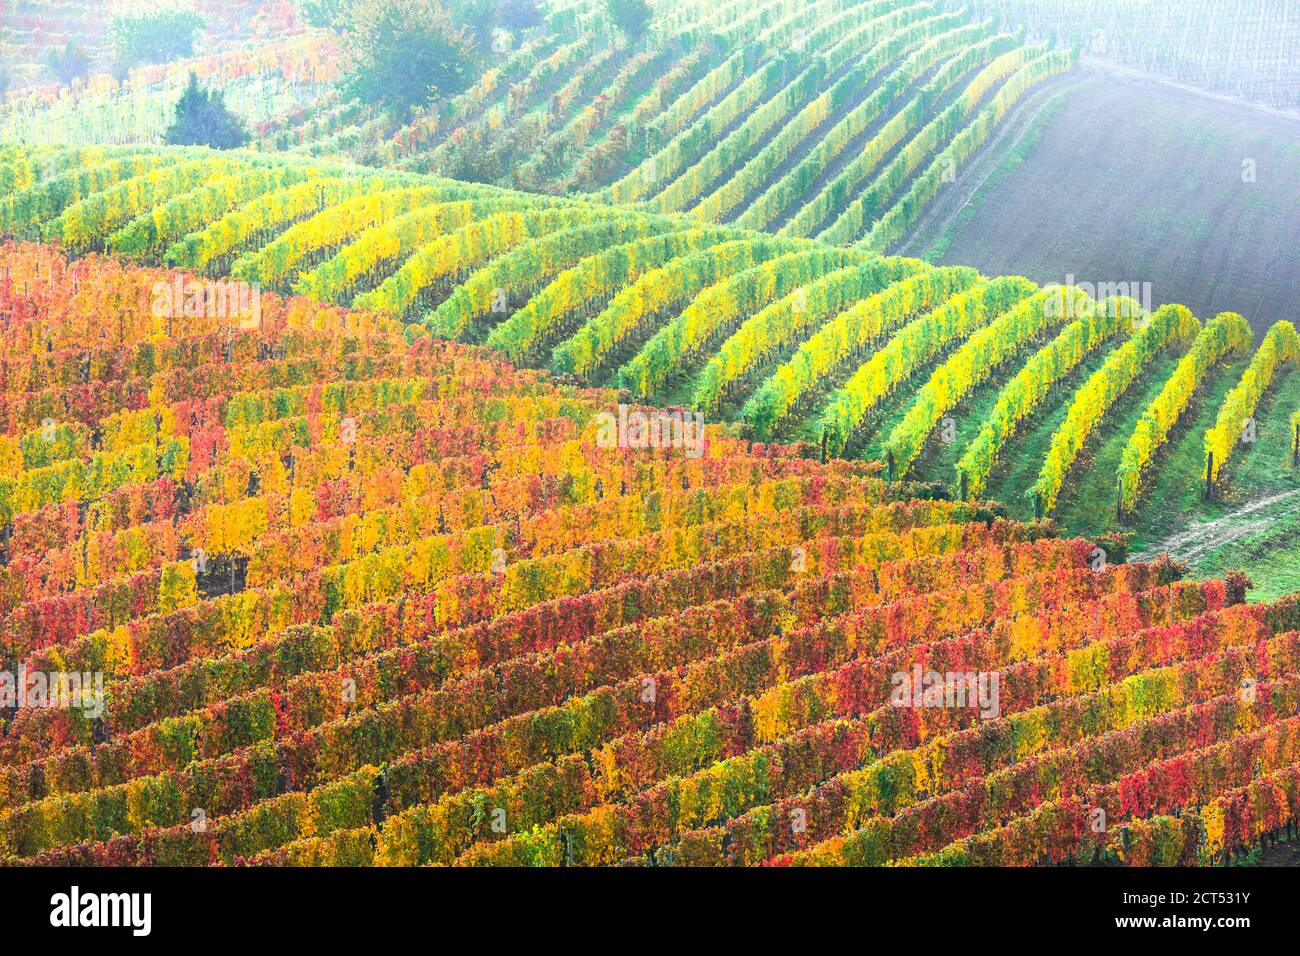 Beauté dans la nature - campagne d'automne avec des rangées de vignobles colorés dans le Piémont, célèbre région viticole de l'Italie Banque D'Images